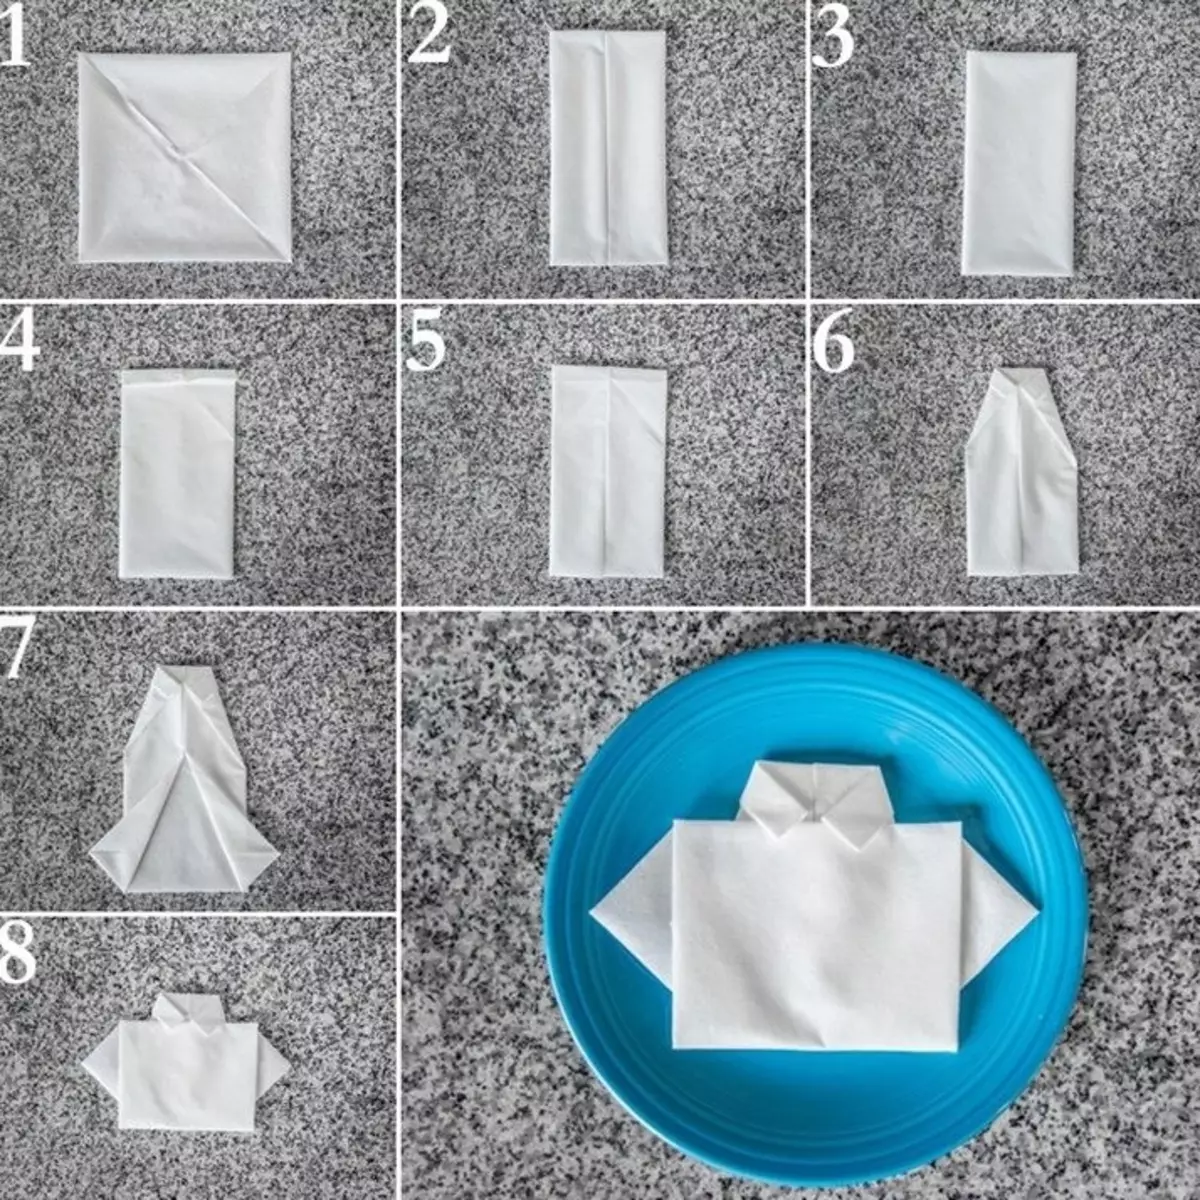 ໃສ່ເສື້ອ postCard ໃນວັນທີ 23 ເດືອນກຸມພາ: ຫັດຖະກໍາຈາກເຈ້ຍດ້ວຍມືຂອງພວກເຂົາເອງ, origami ທີ່ມີສາຍ. ວິທີການຂັ້ນຕອນໂດຍຂັ້ນຕອນທີ່ຈະເຮັດຂອງຂວັນສໍາລັບເດັກນ້ອຍແລະພໍ່ຈາກຜ້າເຊັດໂຕ? 18579_35